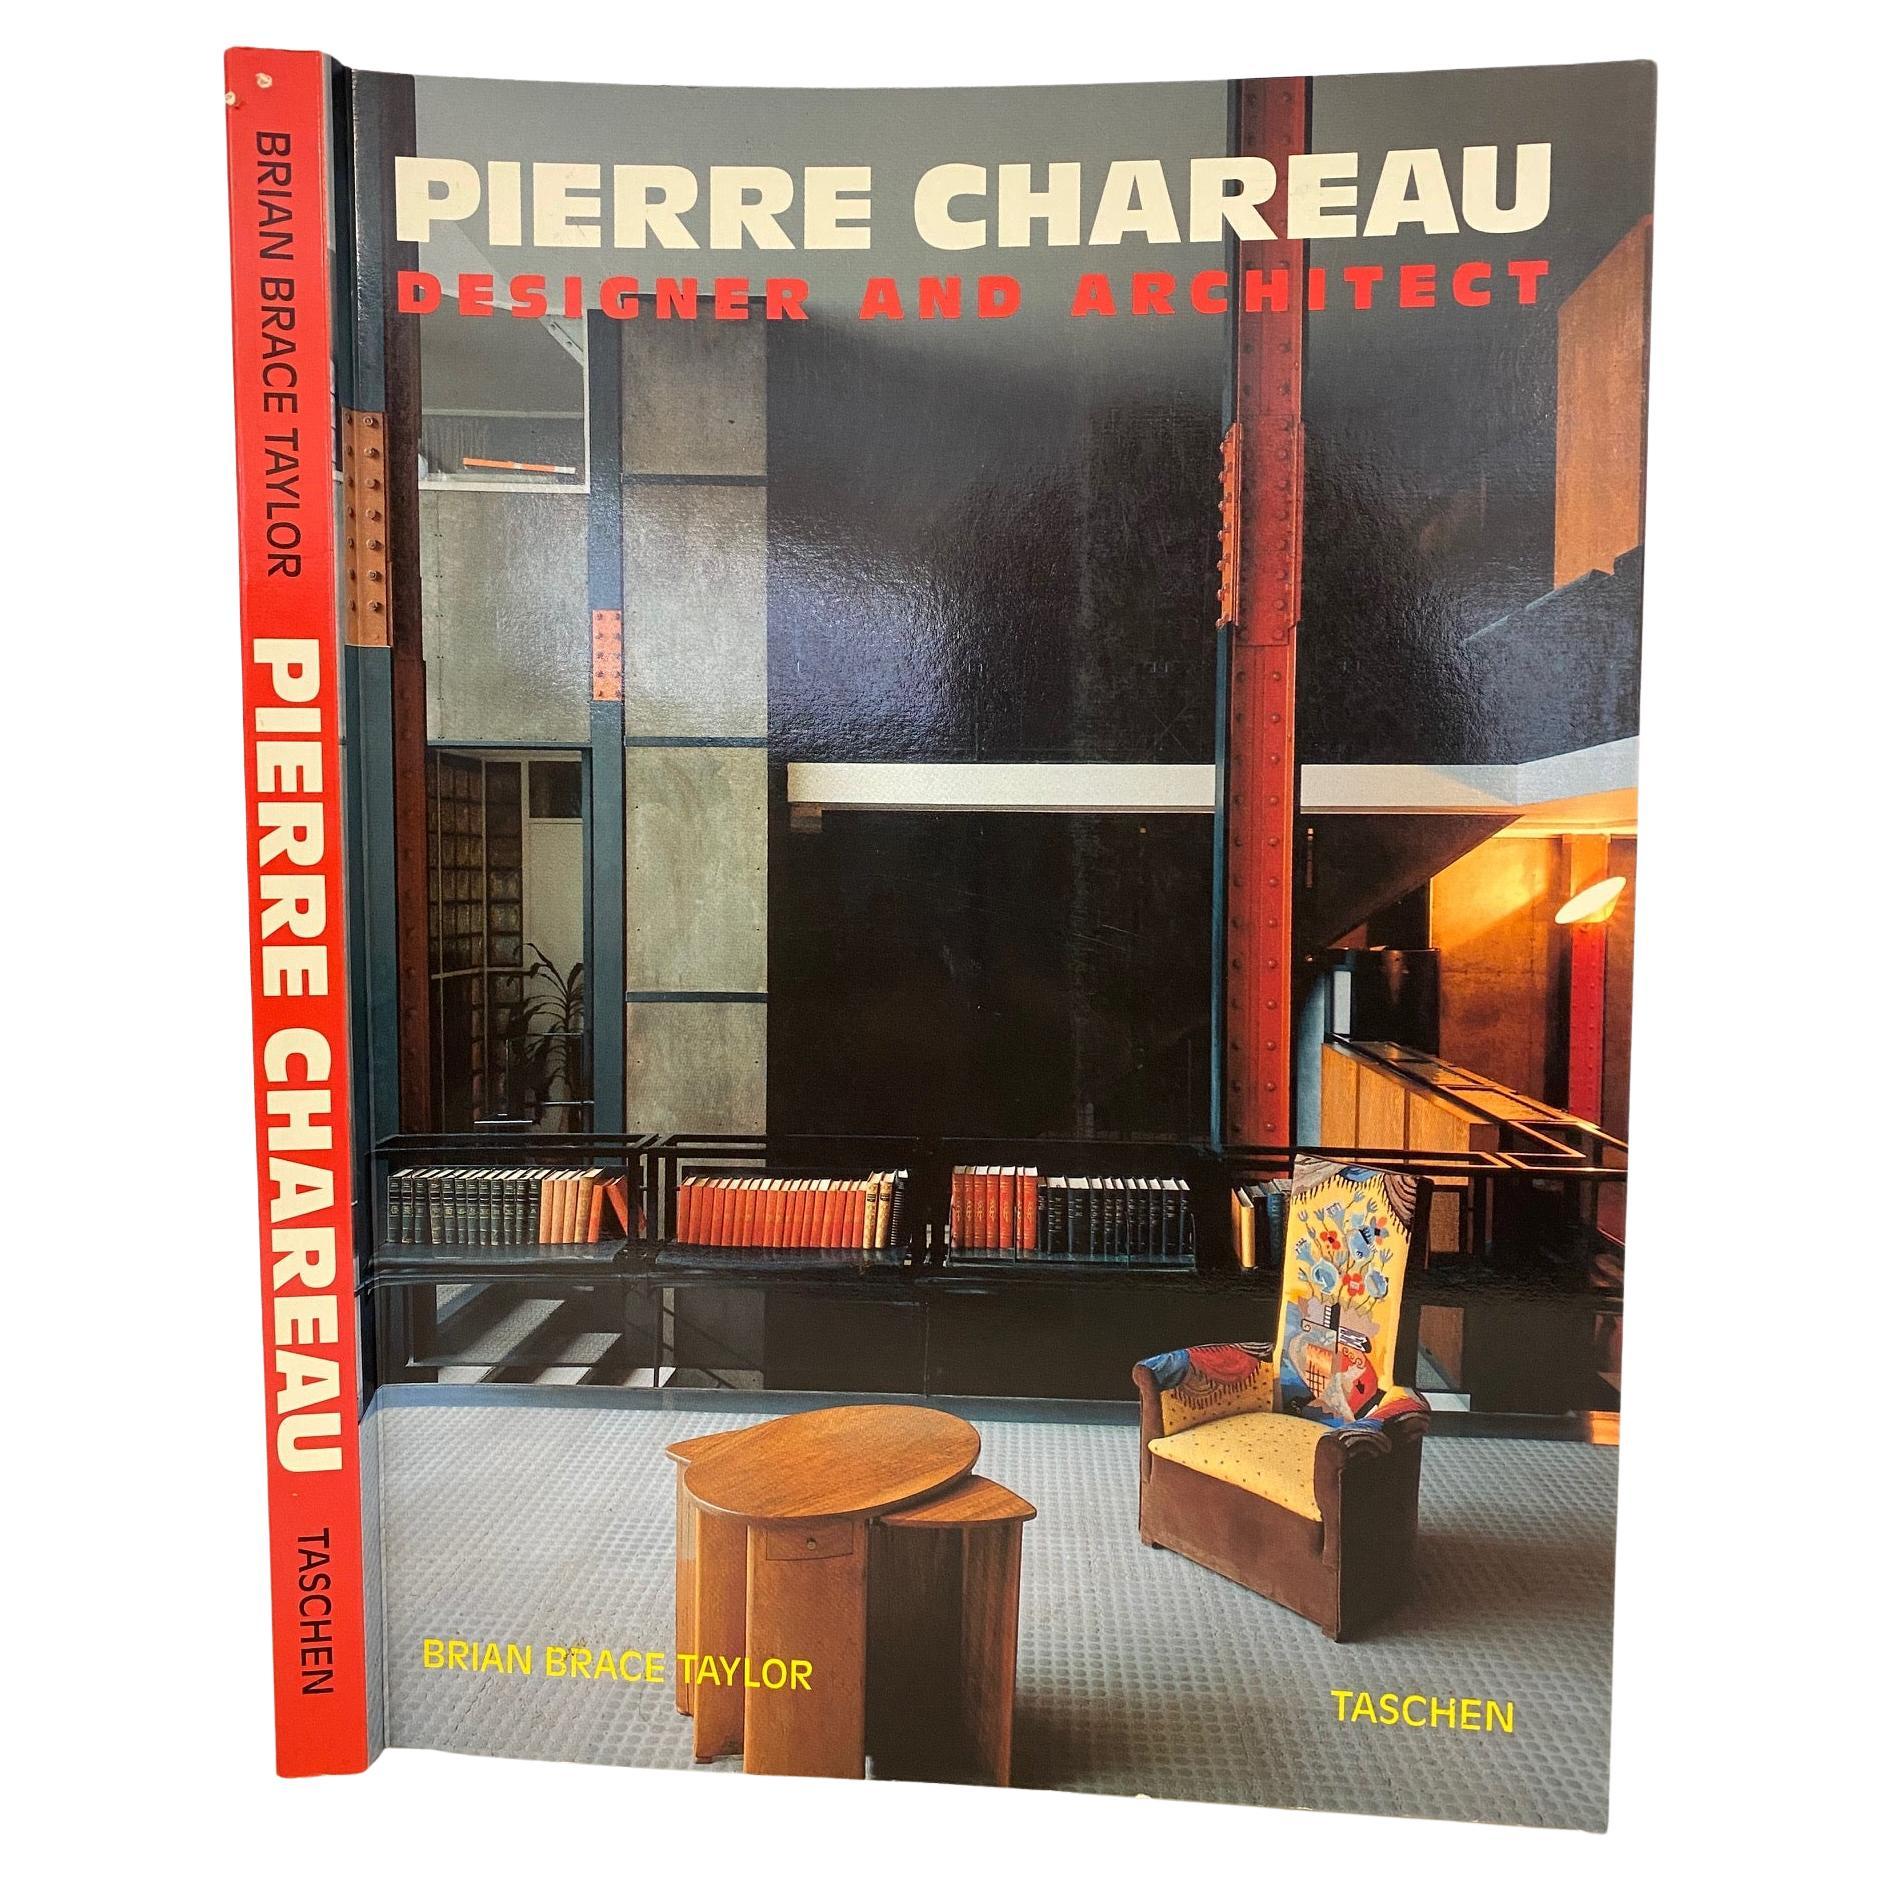 Pierre Chareau, designer et architecte par Brian Brace Taylor